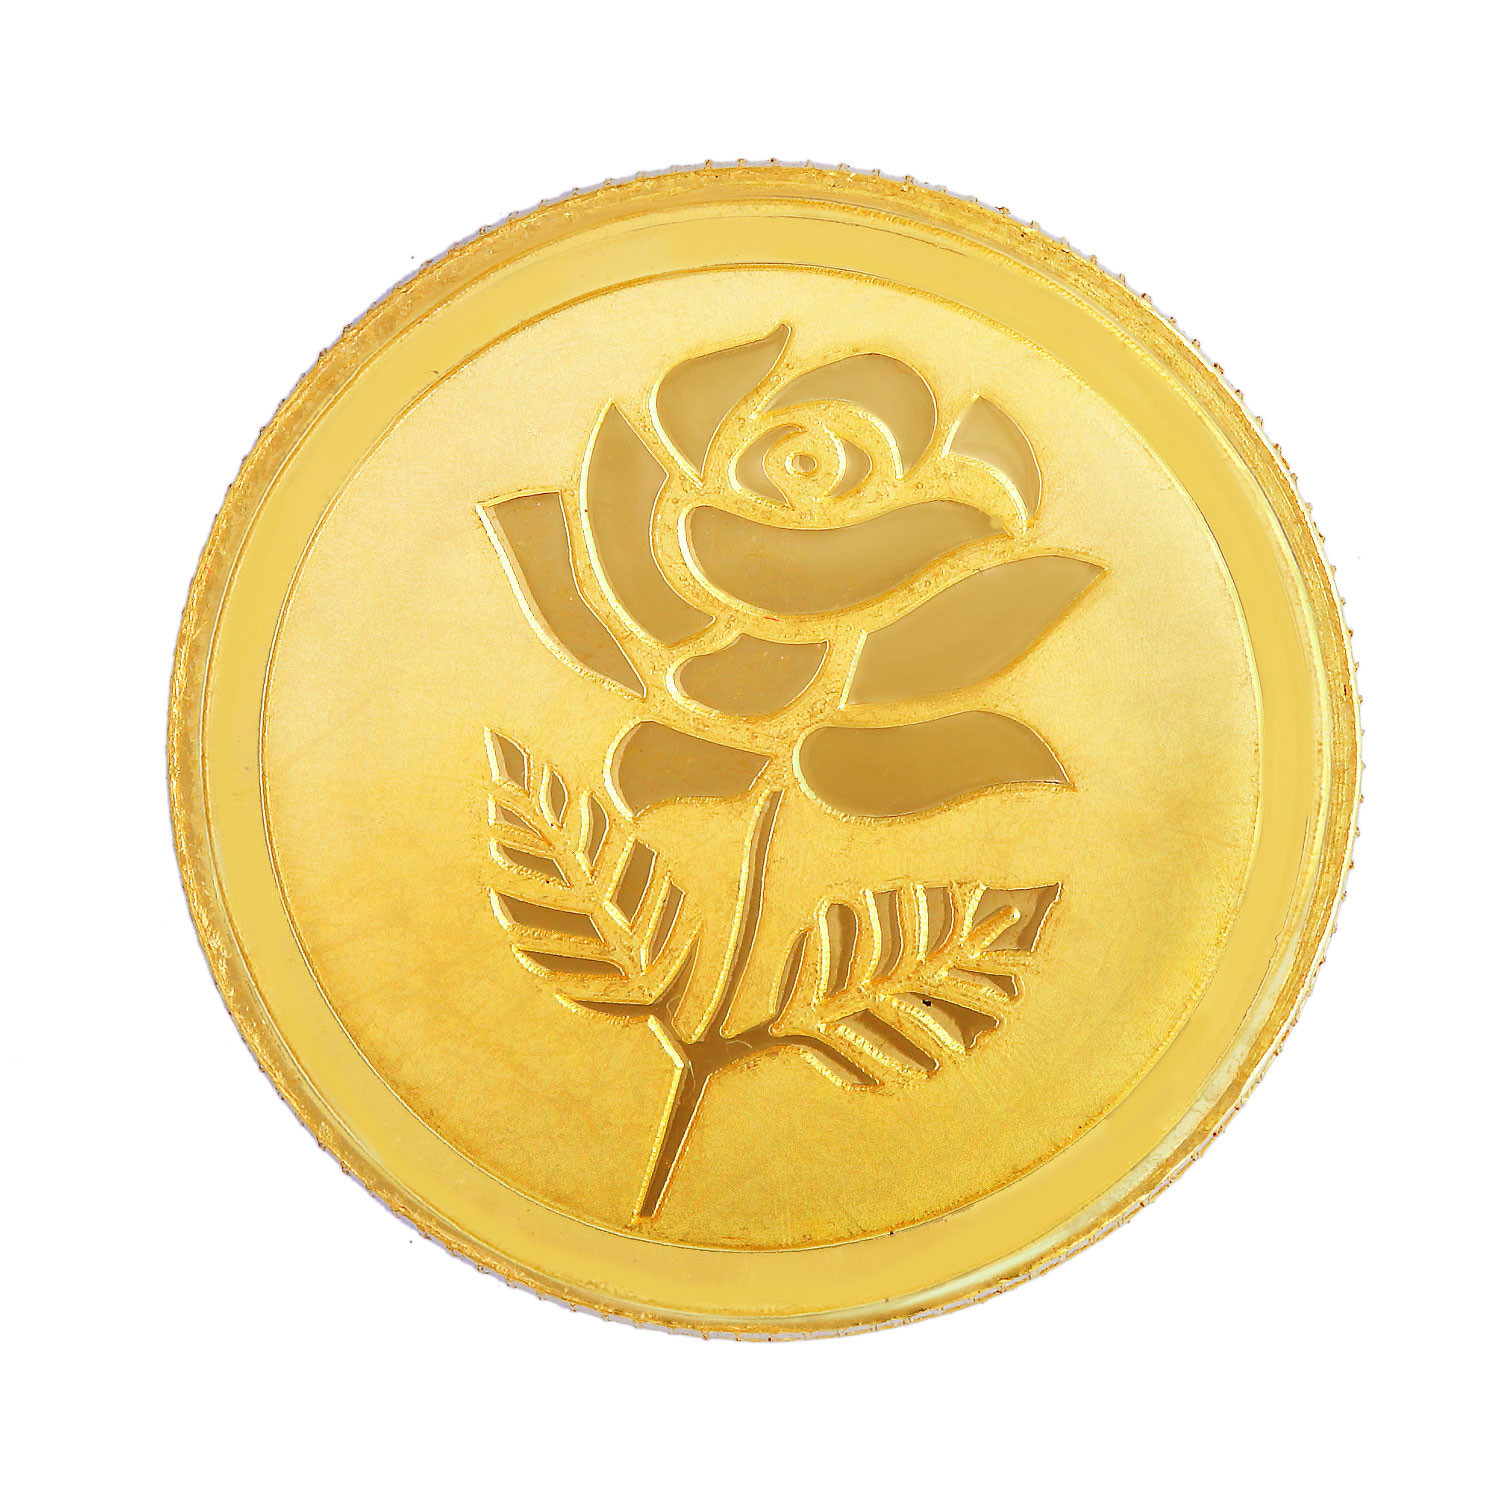 Malabar Gold 24k 999 Purity Rose 10g Gold Coin